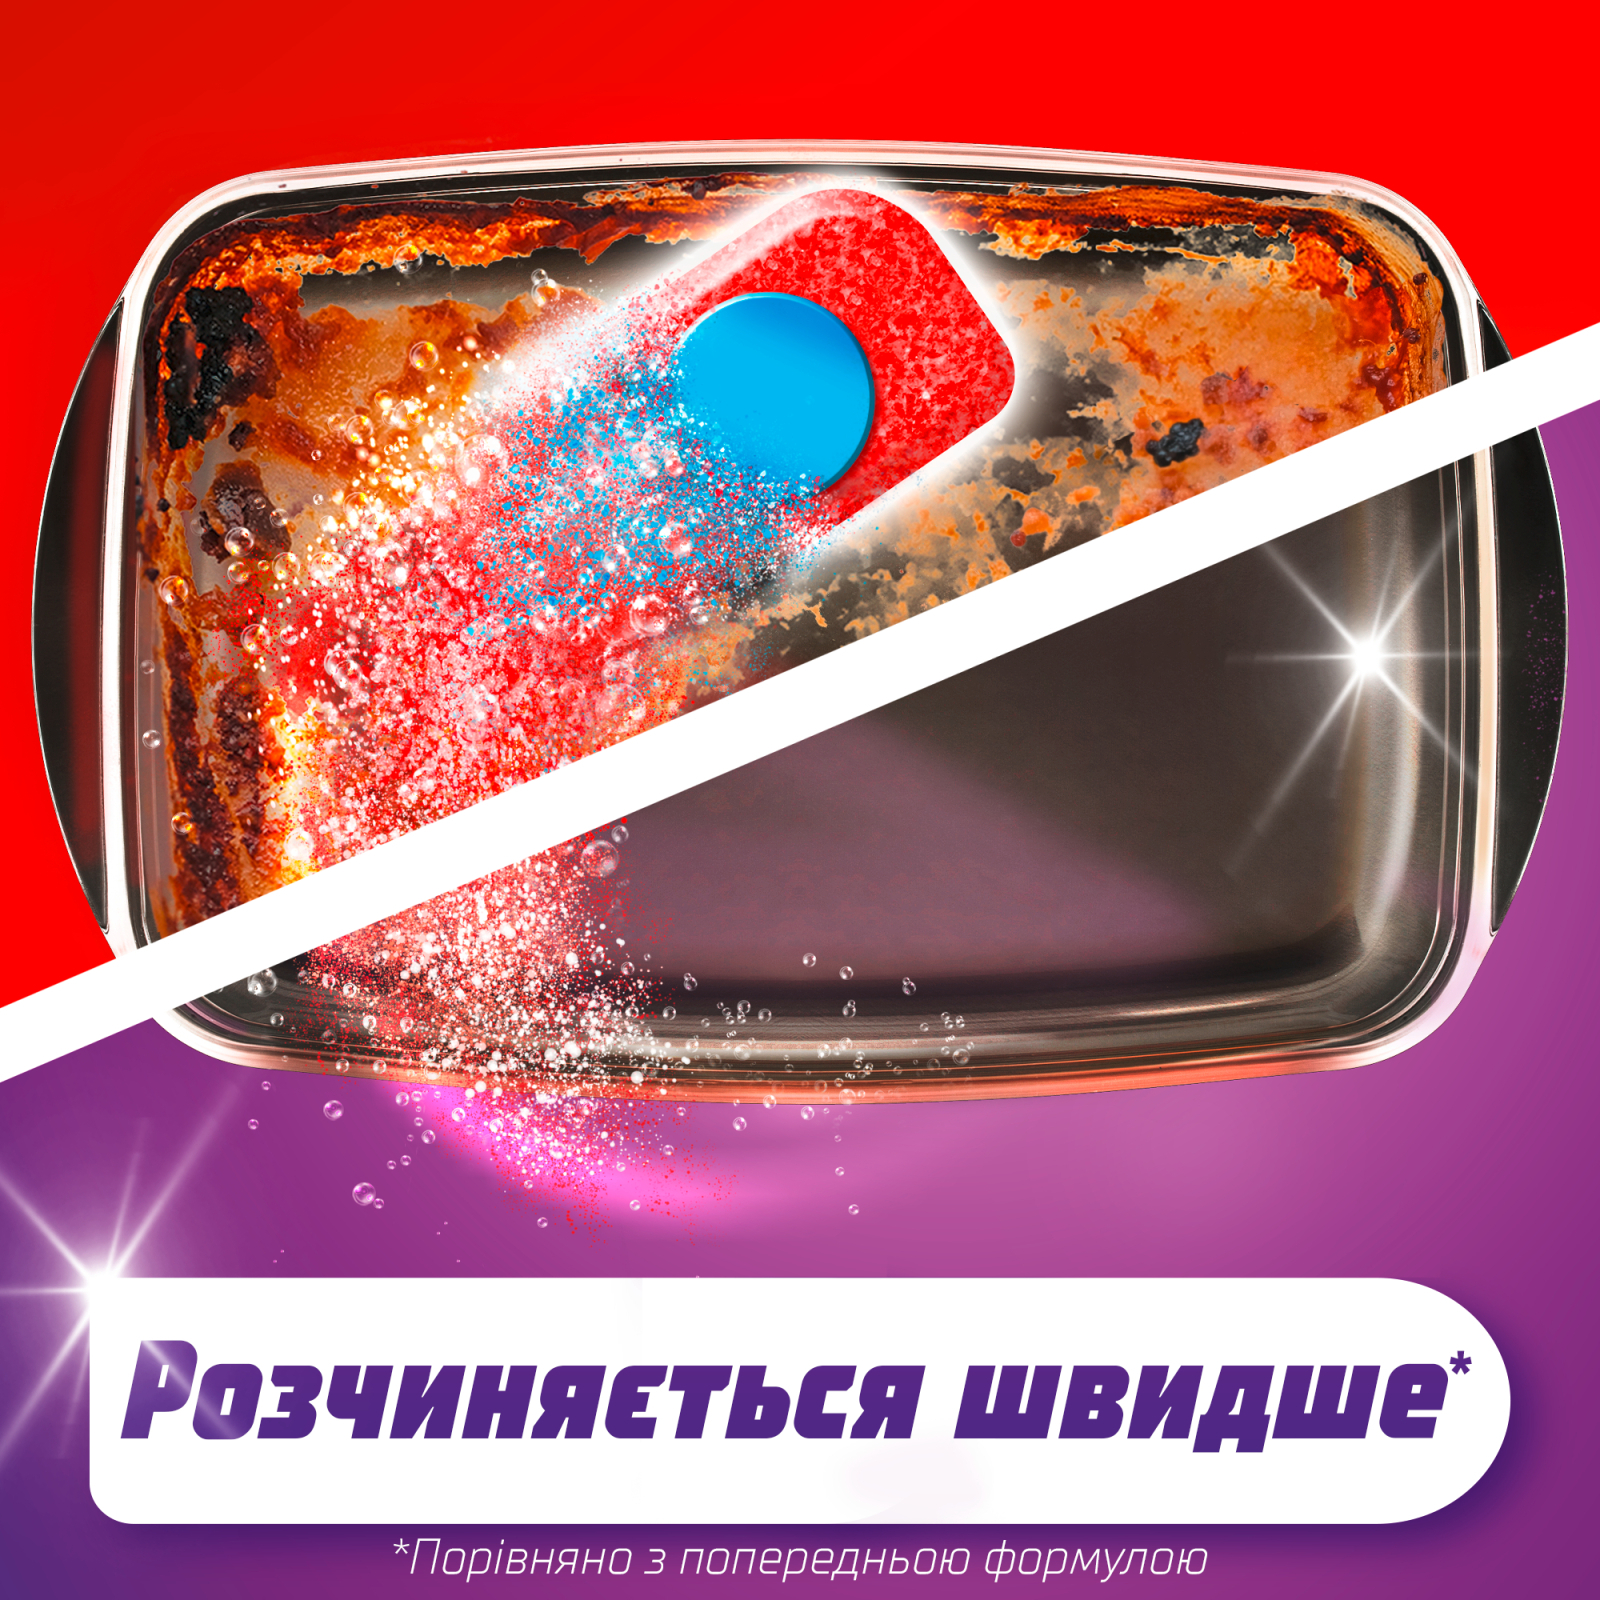 Таблетки для посудомоечных машин Somat All in 1 110 шт. (9000101577044) изображение 2